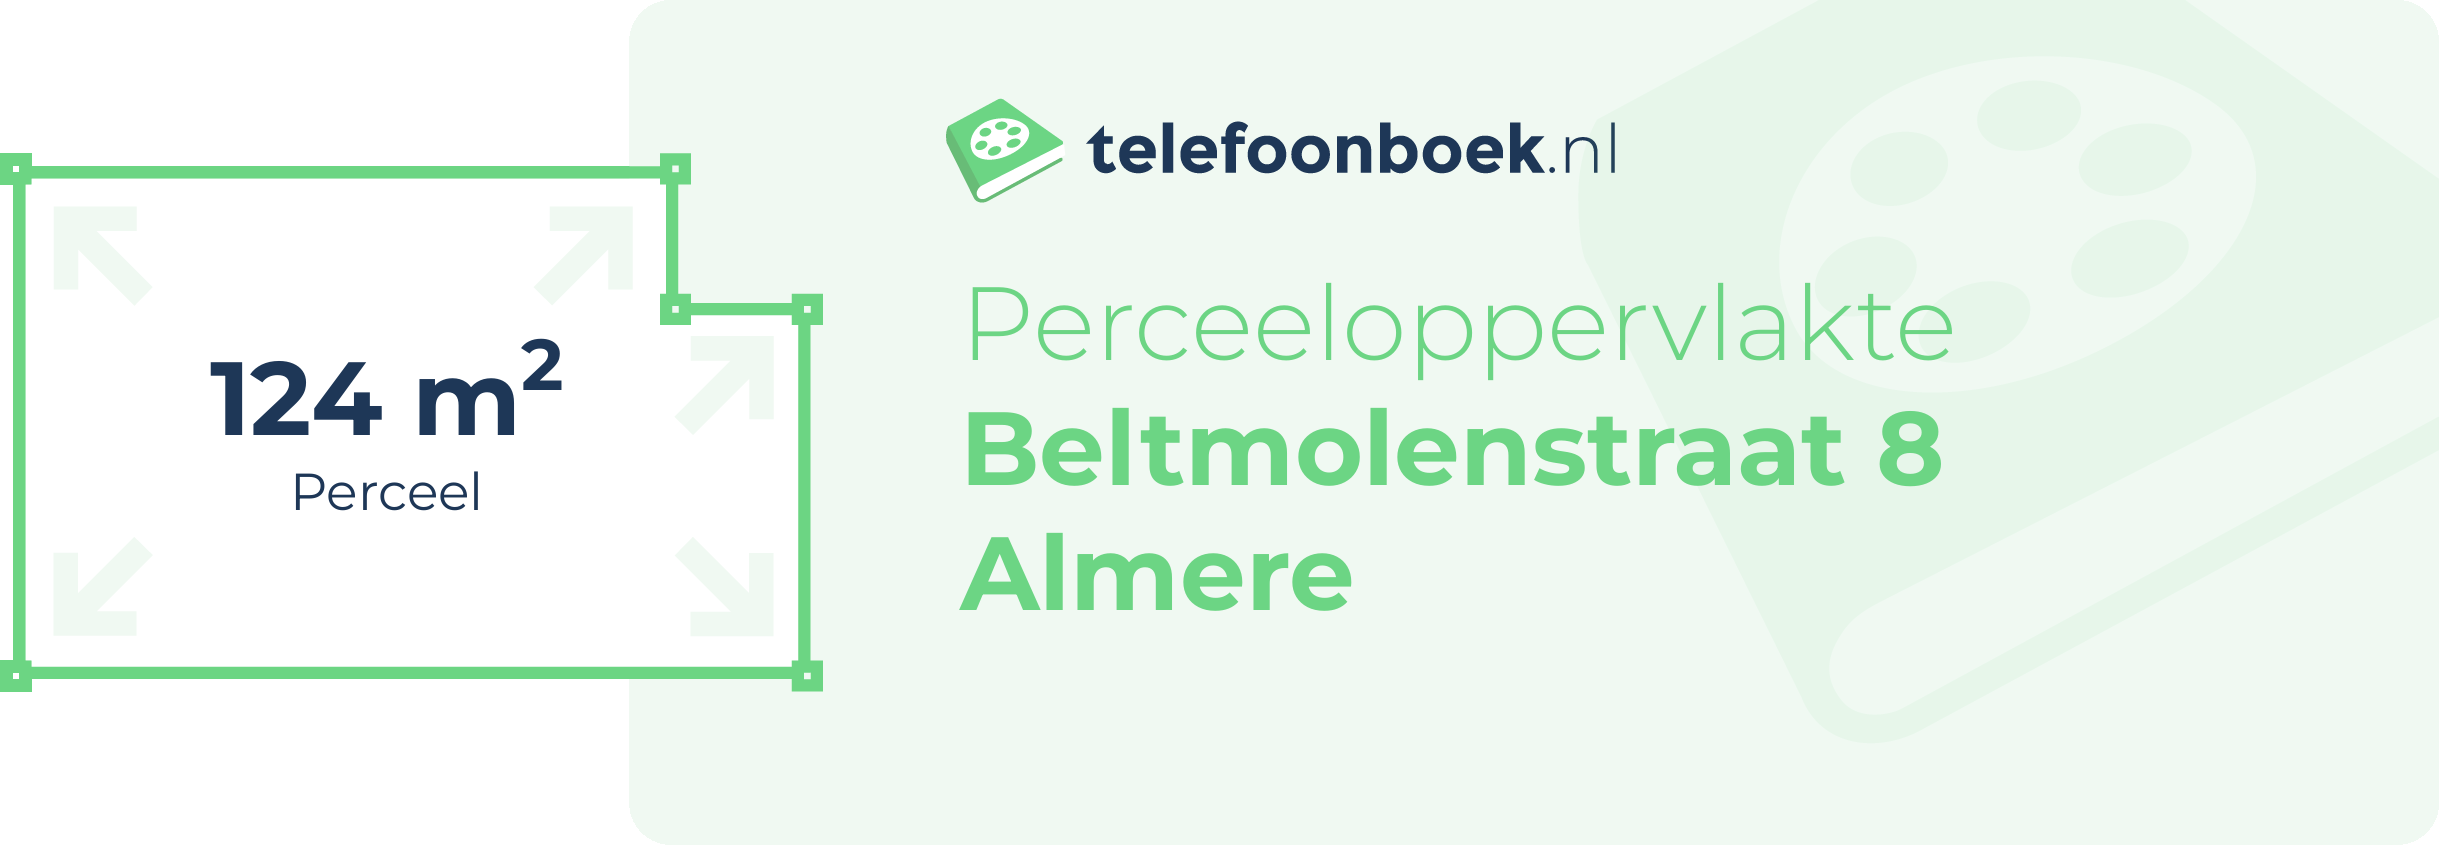 Perceeloppervlakte Beltmolenstraat 8 Almere